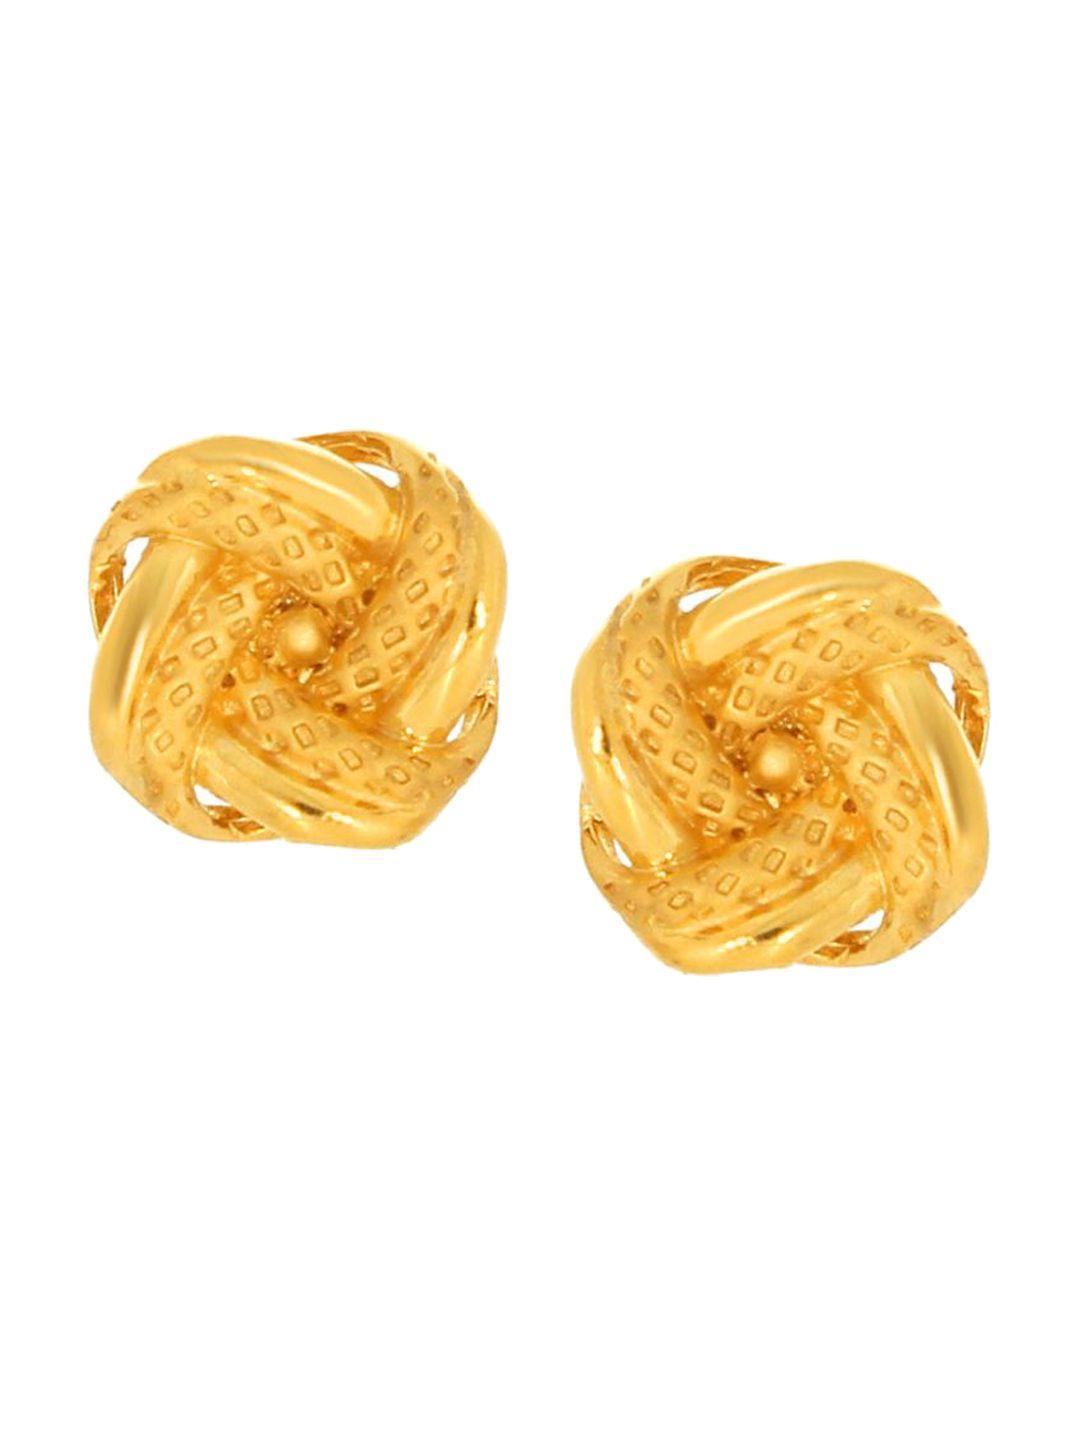 senco 22kt gold twisted stud earrings-3.4gm